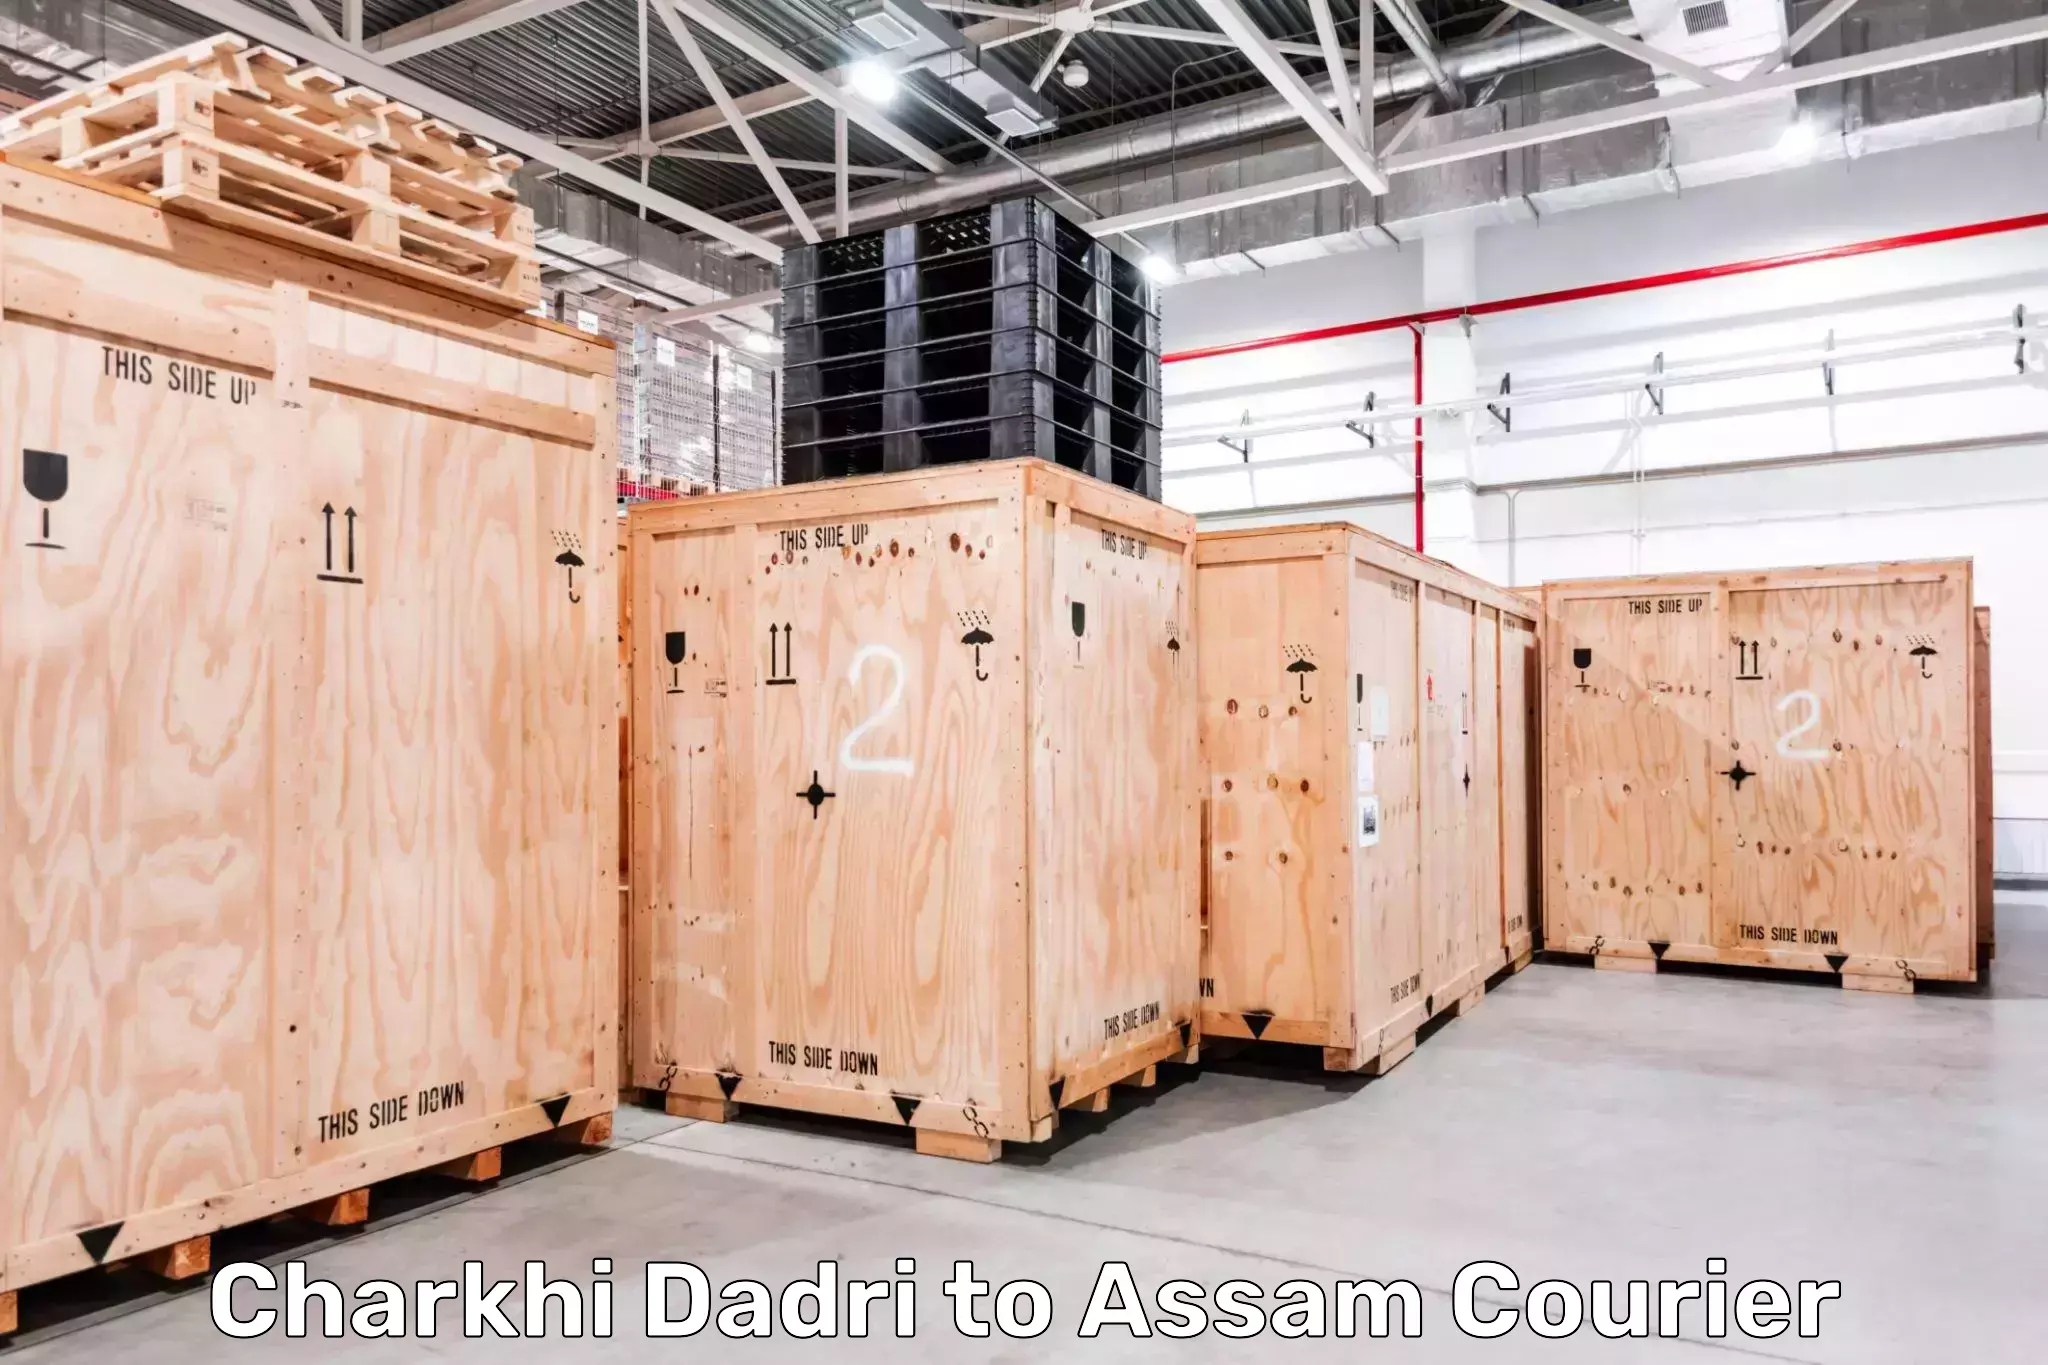 Modern courier technology Charkhi Dadri to Assam